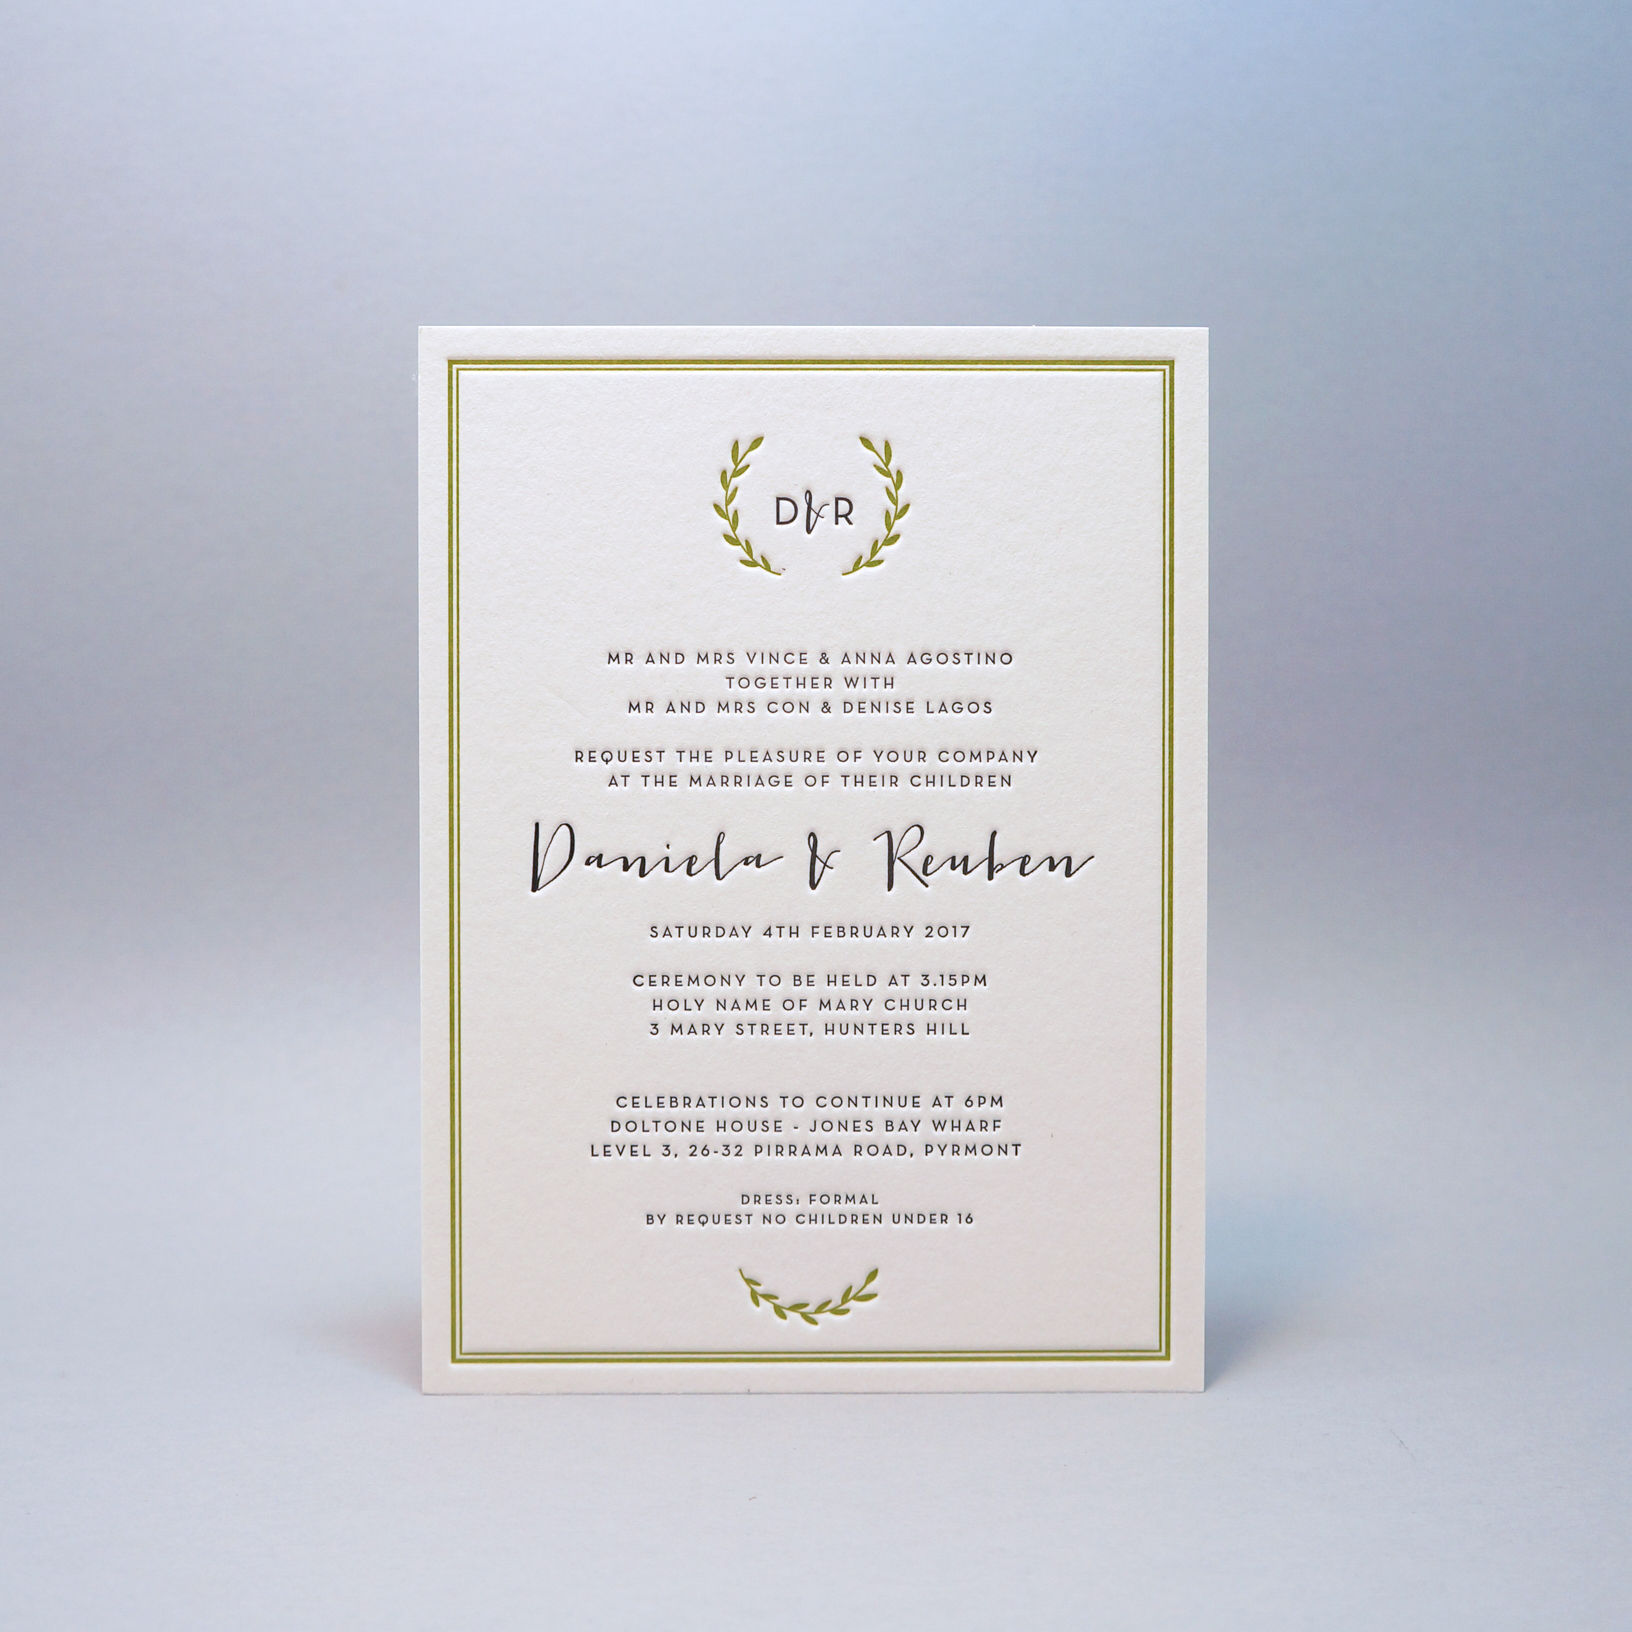 Letterpress-wedding-invitations-green-cordenons-wild lettra-wreath